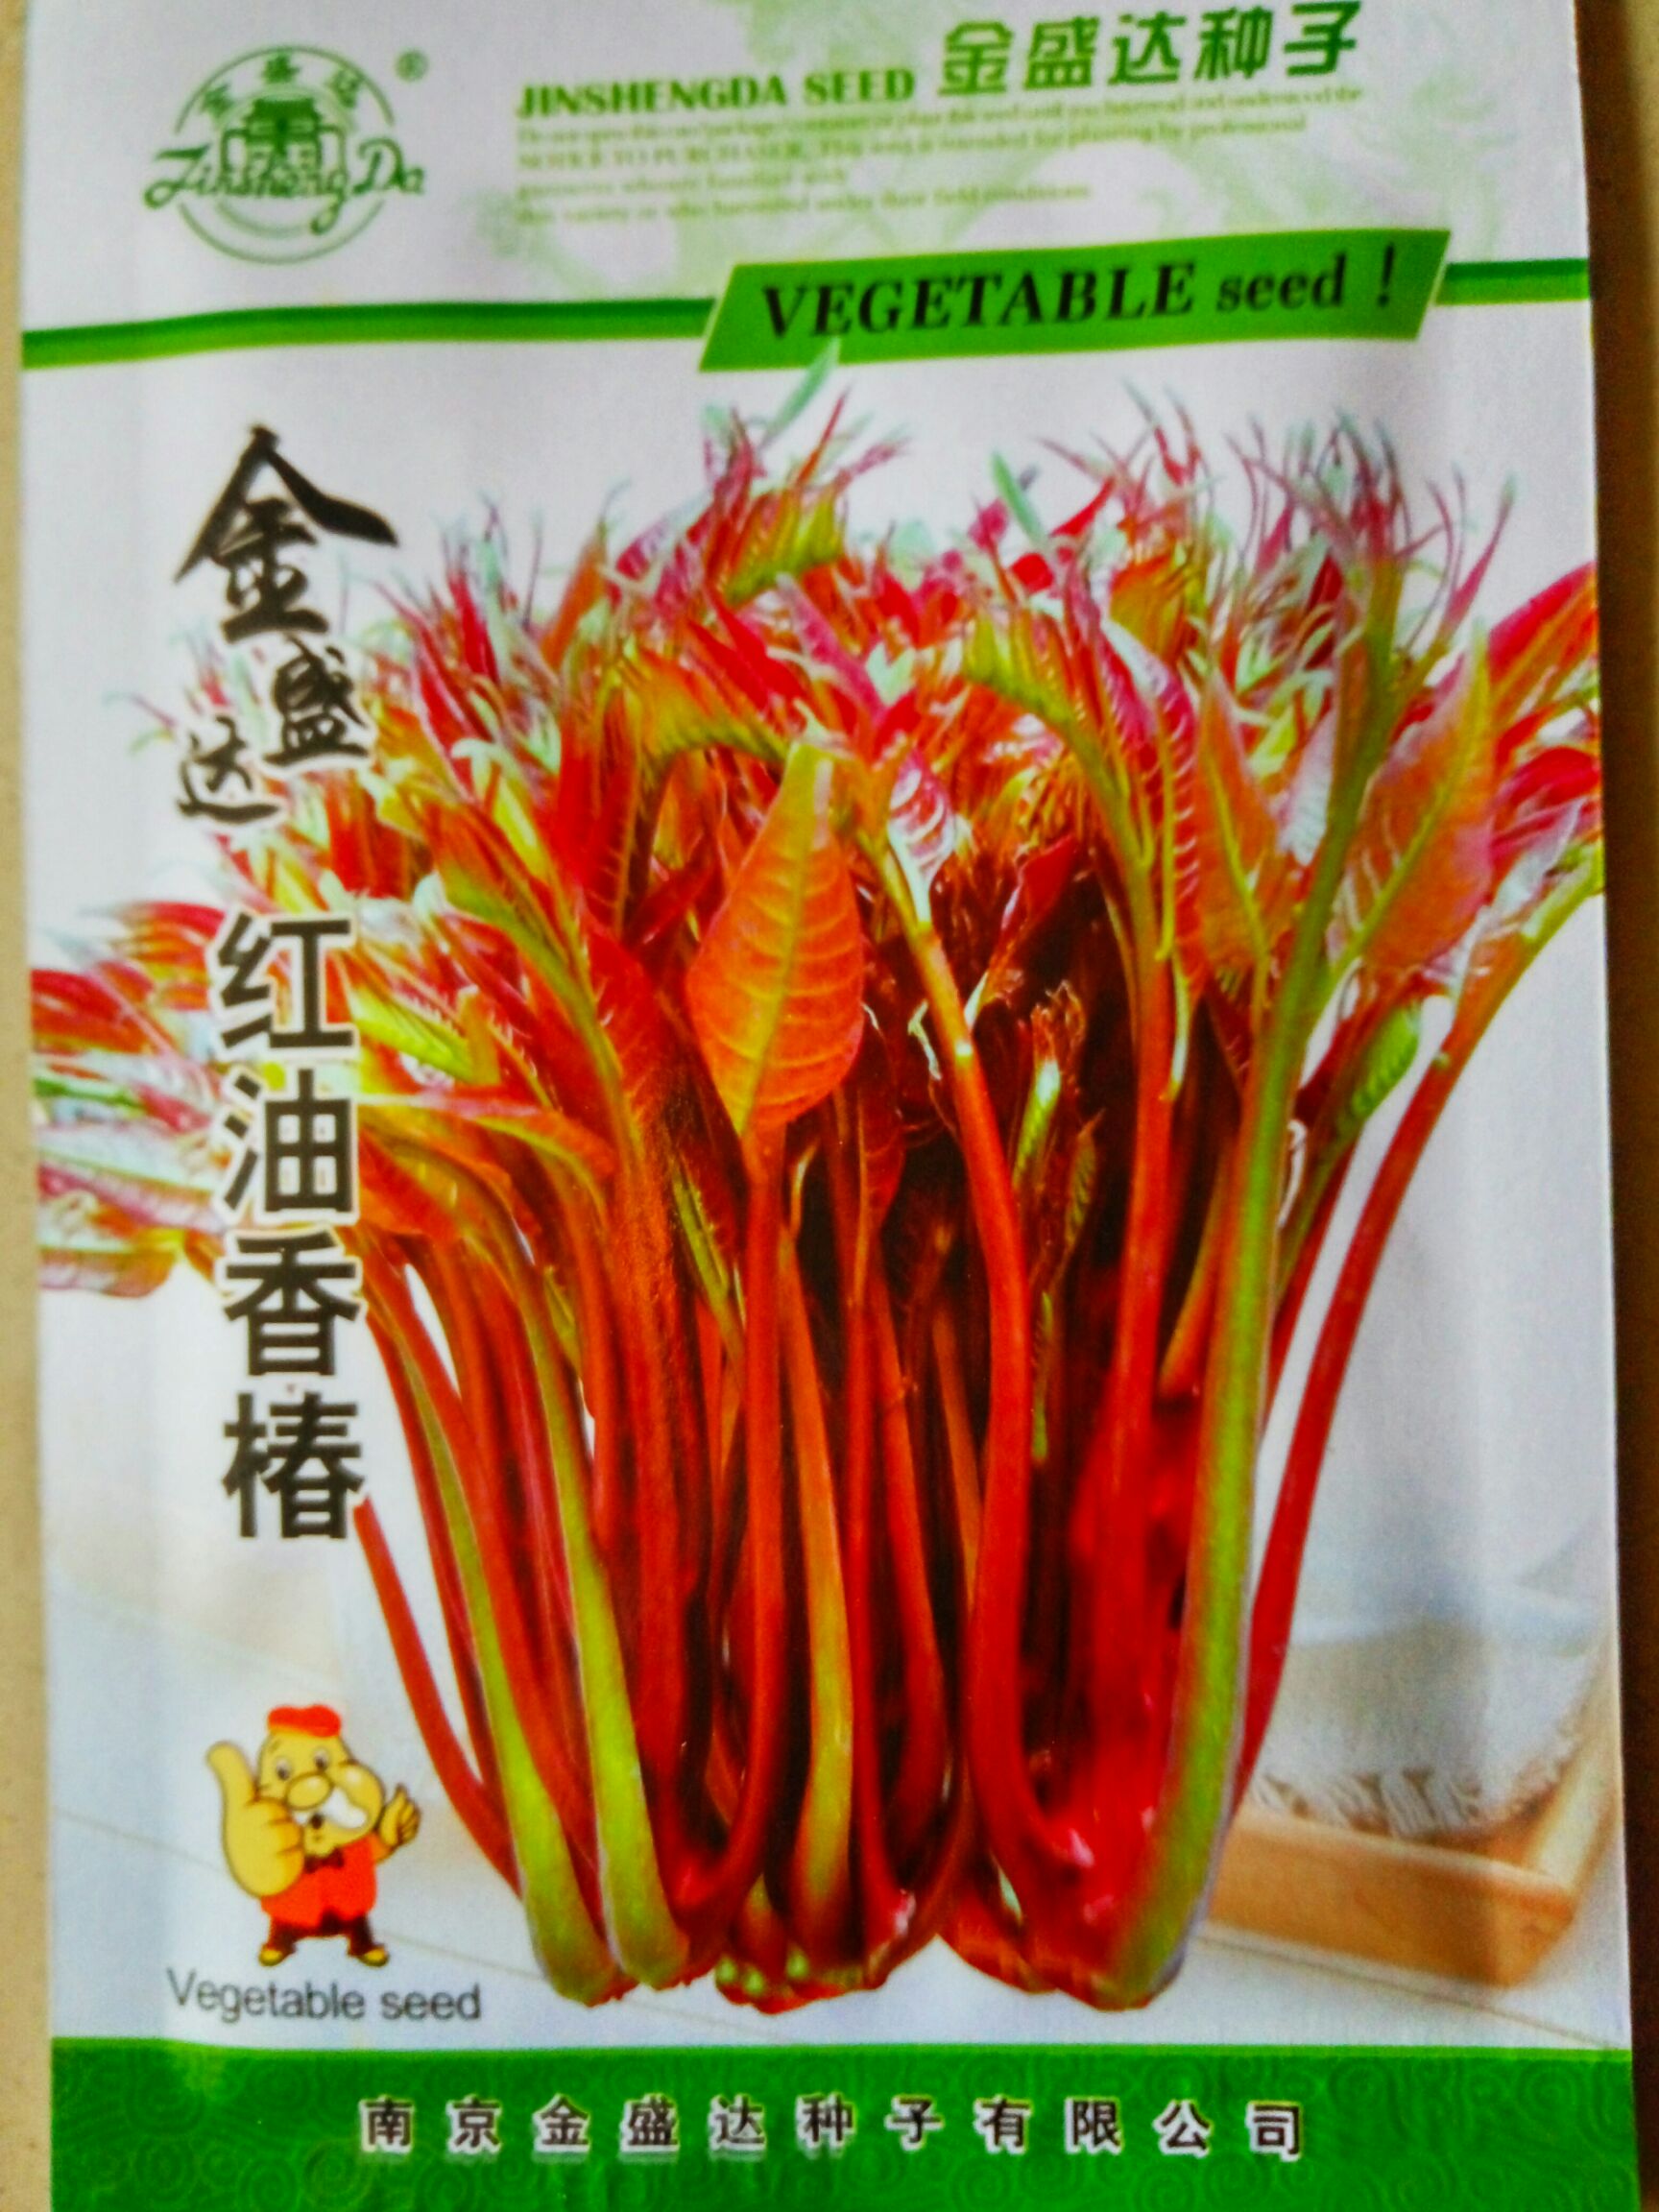 沭阳县香椿种子 ≥75% 